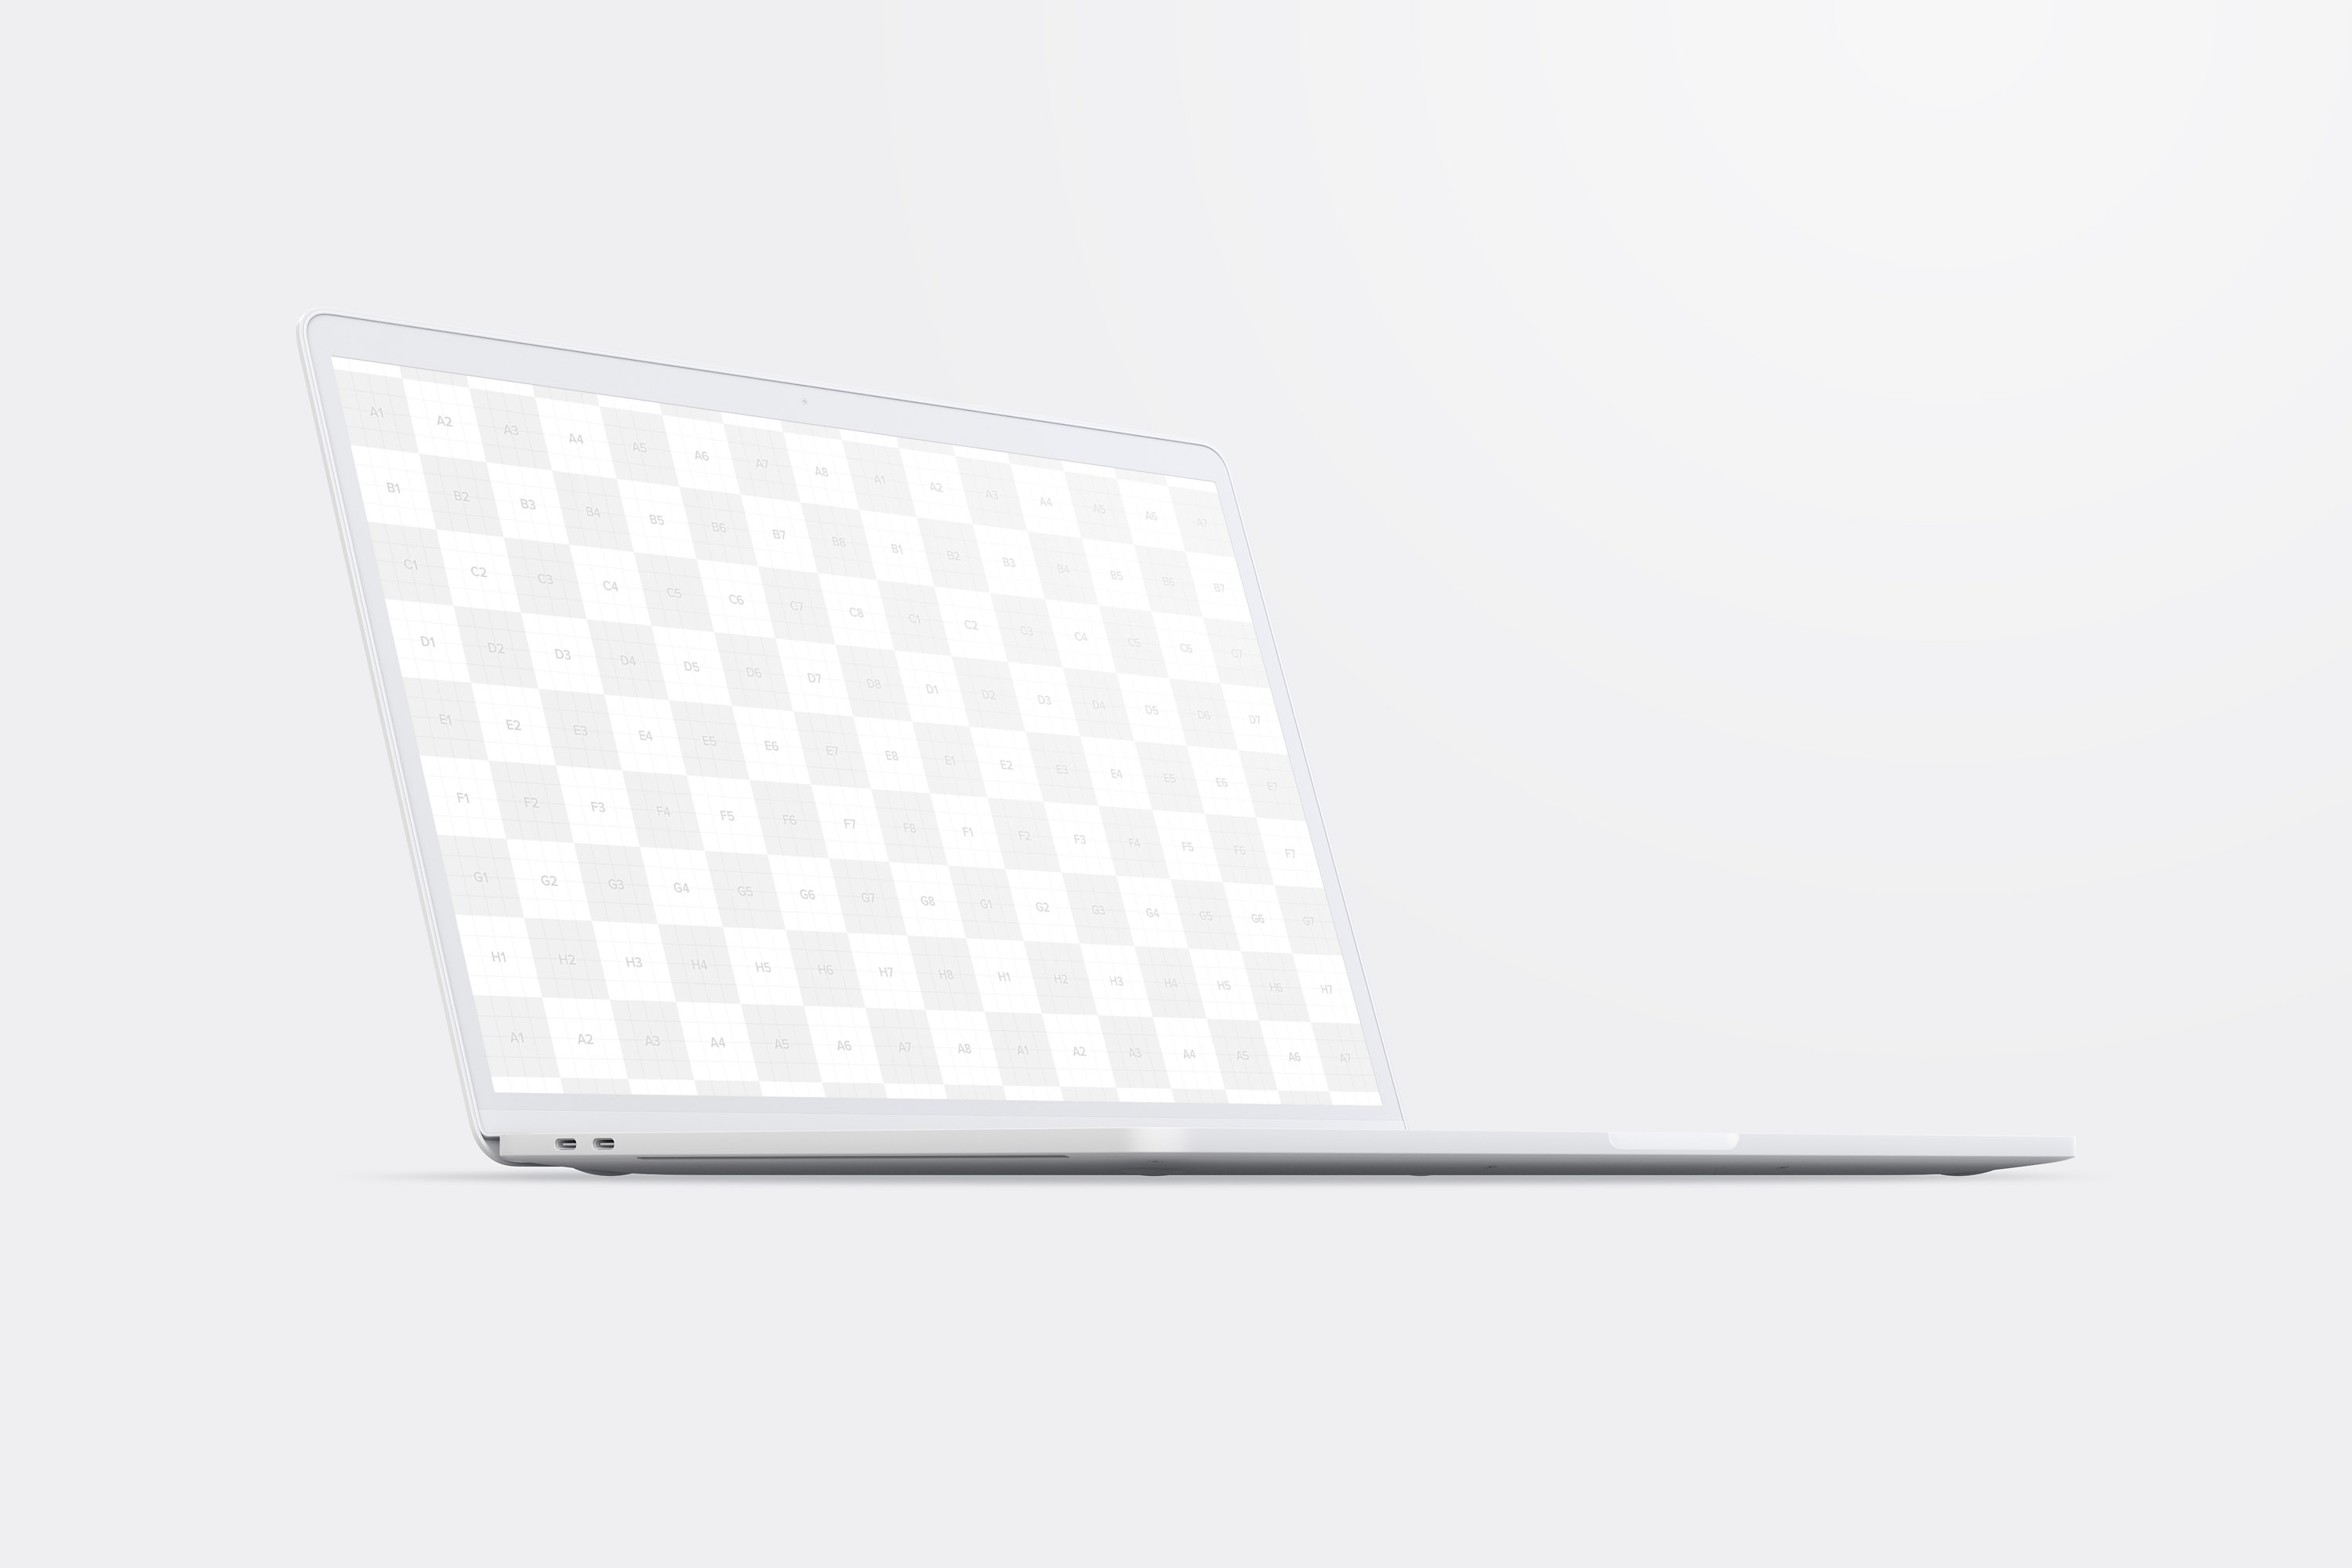 陶瓷黏土材质MacBook Pro笔记本电脑左前视图样机 Clay MacBook Pro 15" with Touch Bar, Front Left View Mockup插图(1)